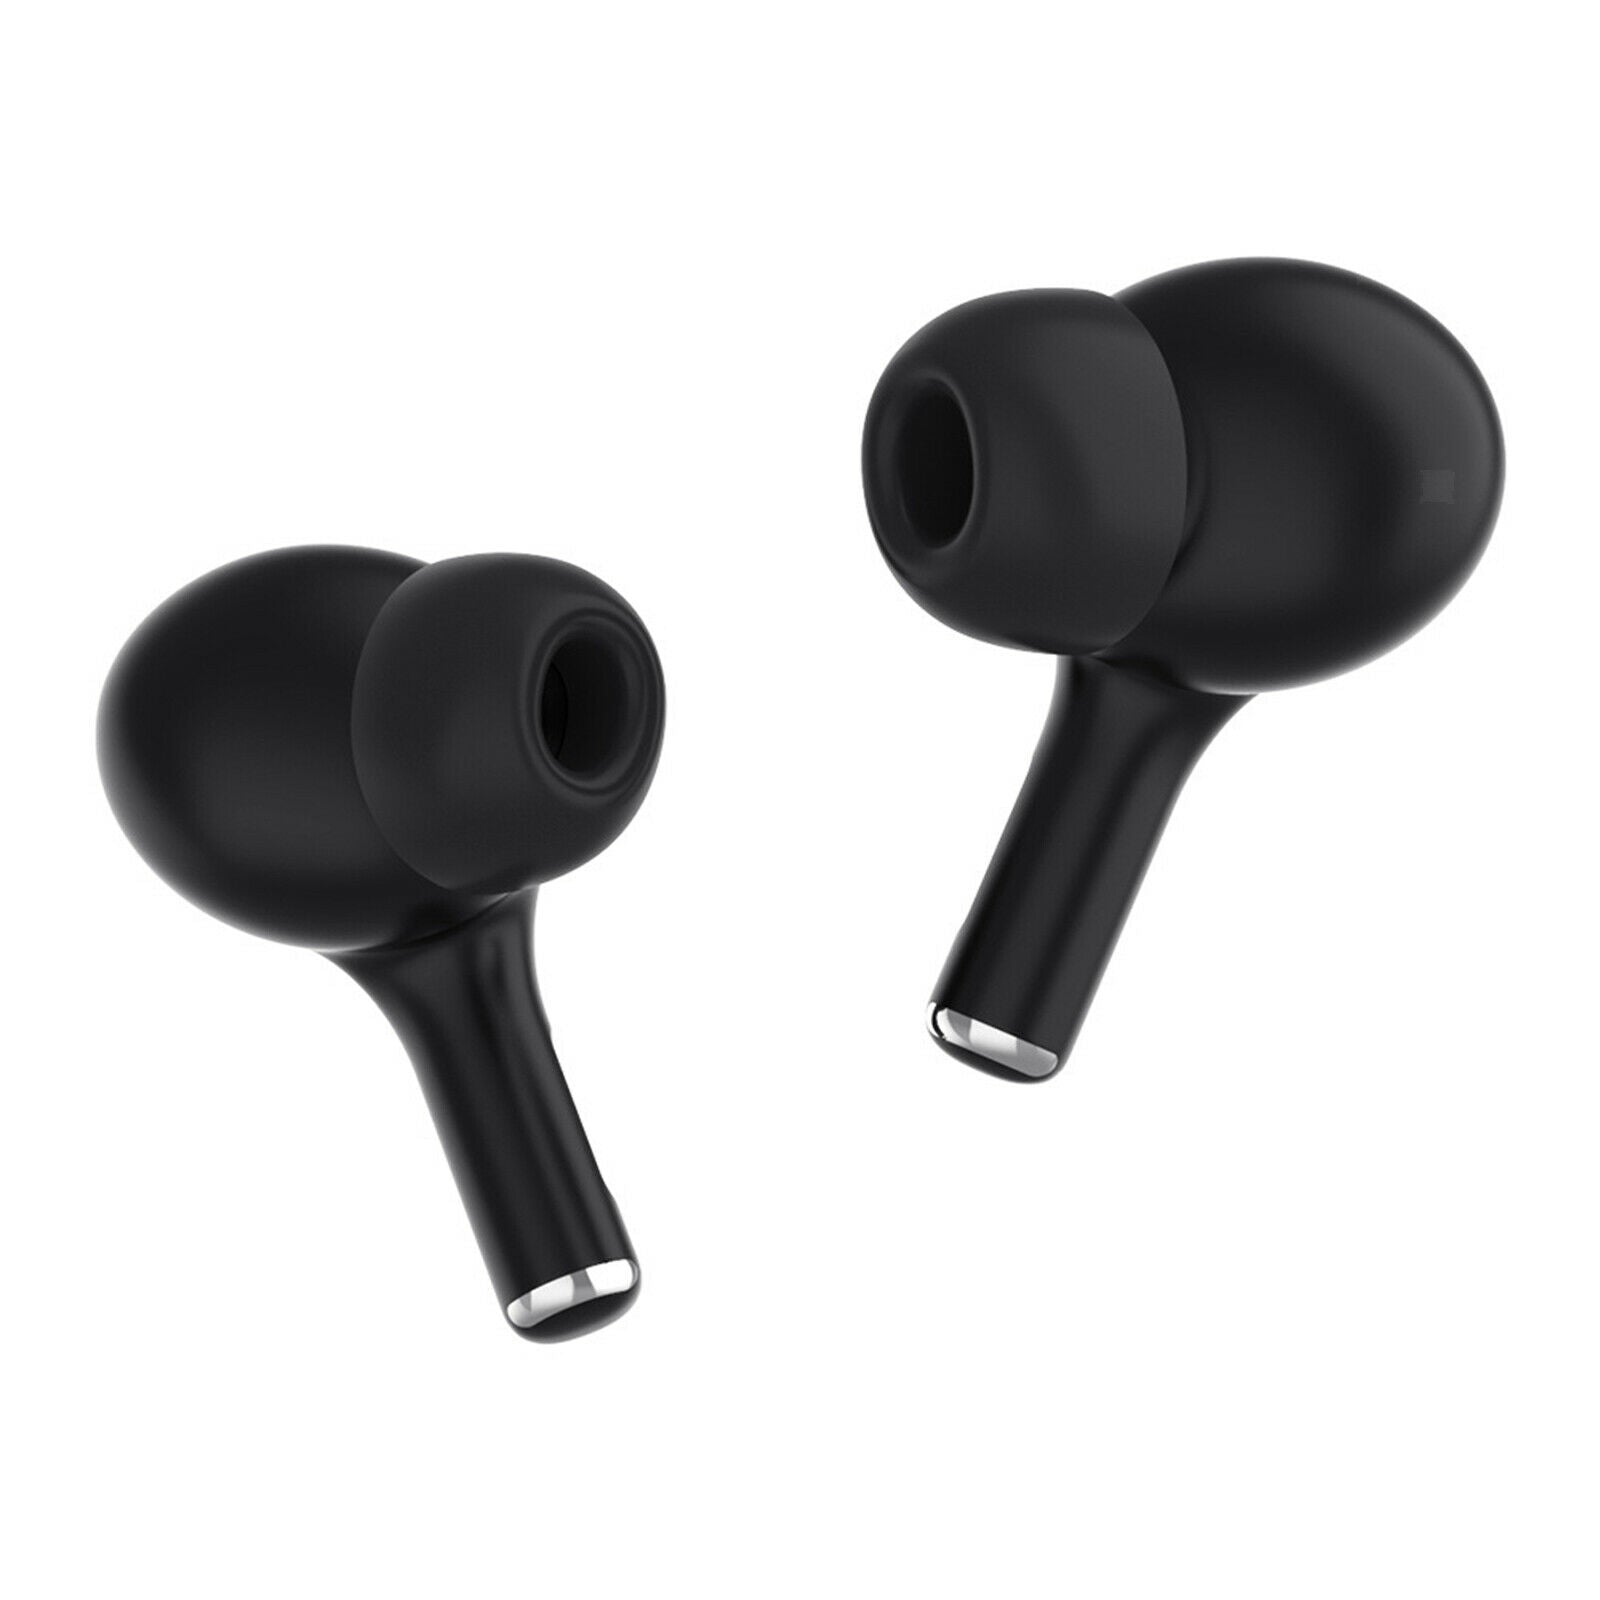 C9 Bluetooth 5.0 True Wireless Earbuds In Ear Built in Mic Noise Canceling